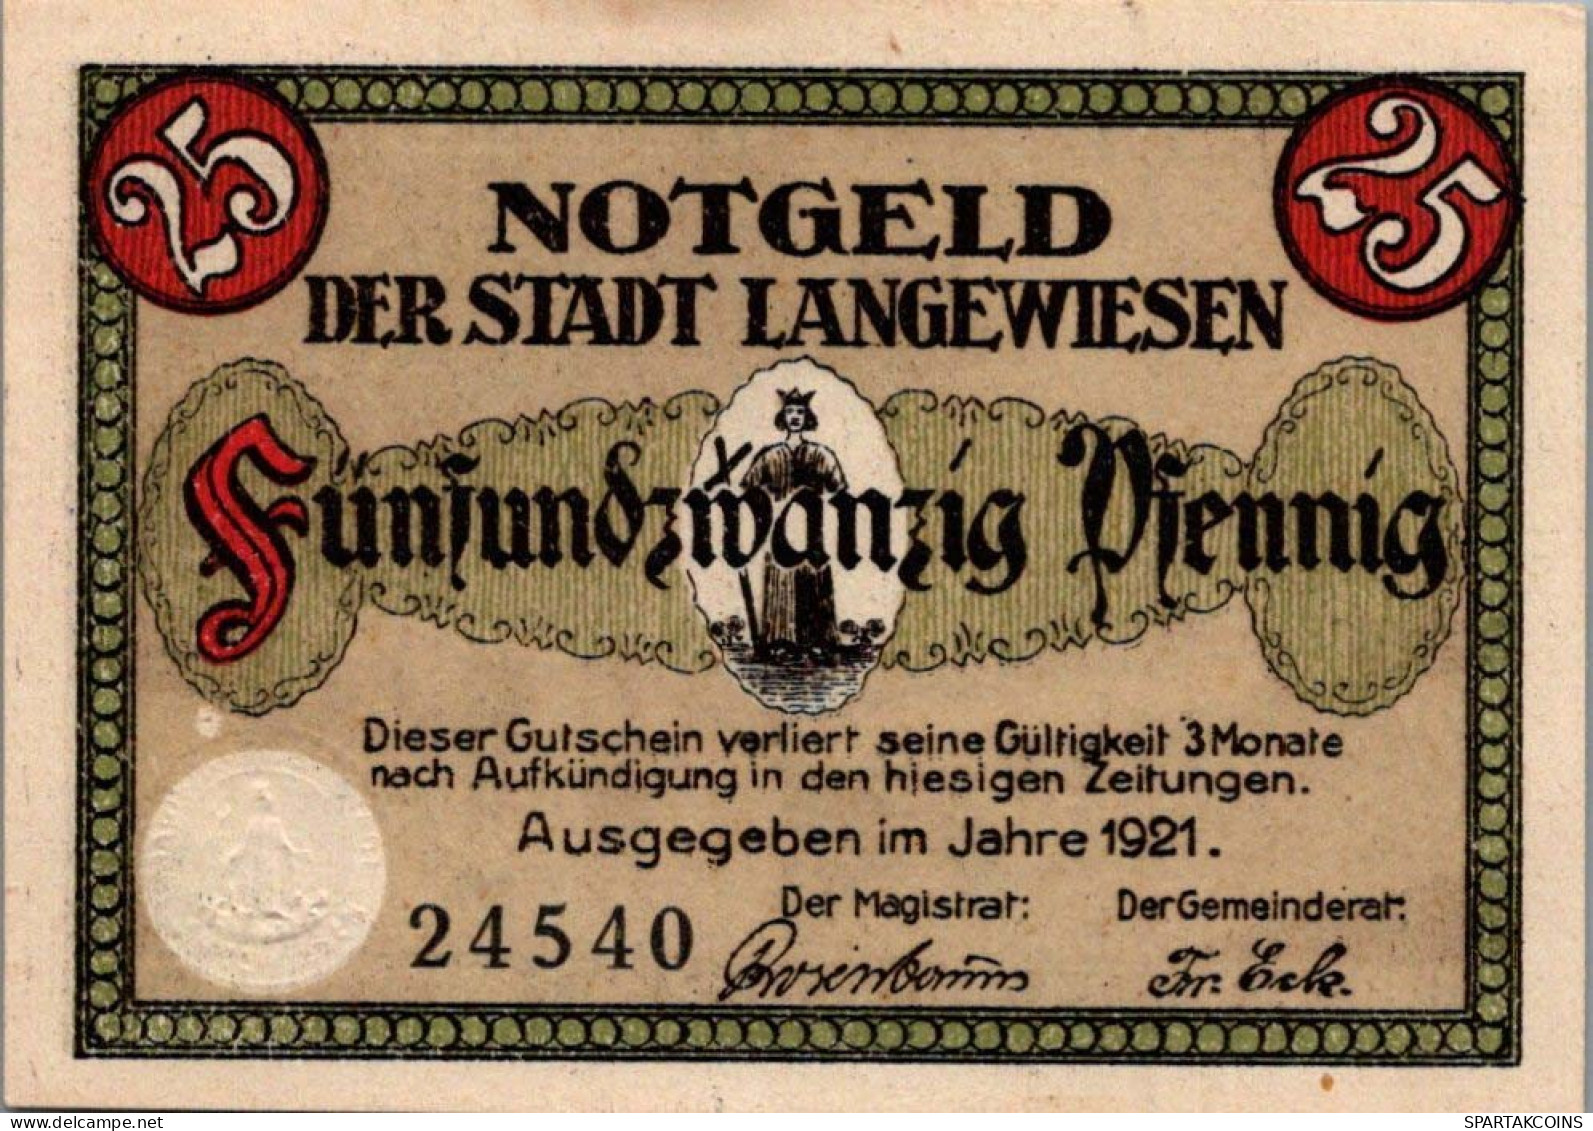 25 PFENNIG 1921 Stadt LANGEWIESEN Thuringia UNC DEUTSCHLAND Notgeld #PC021 - [11] Emisiones Locales